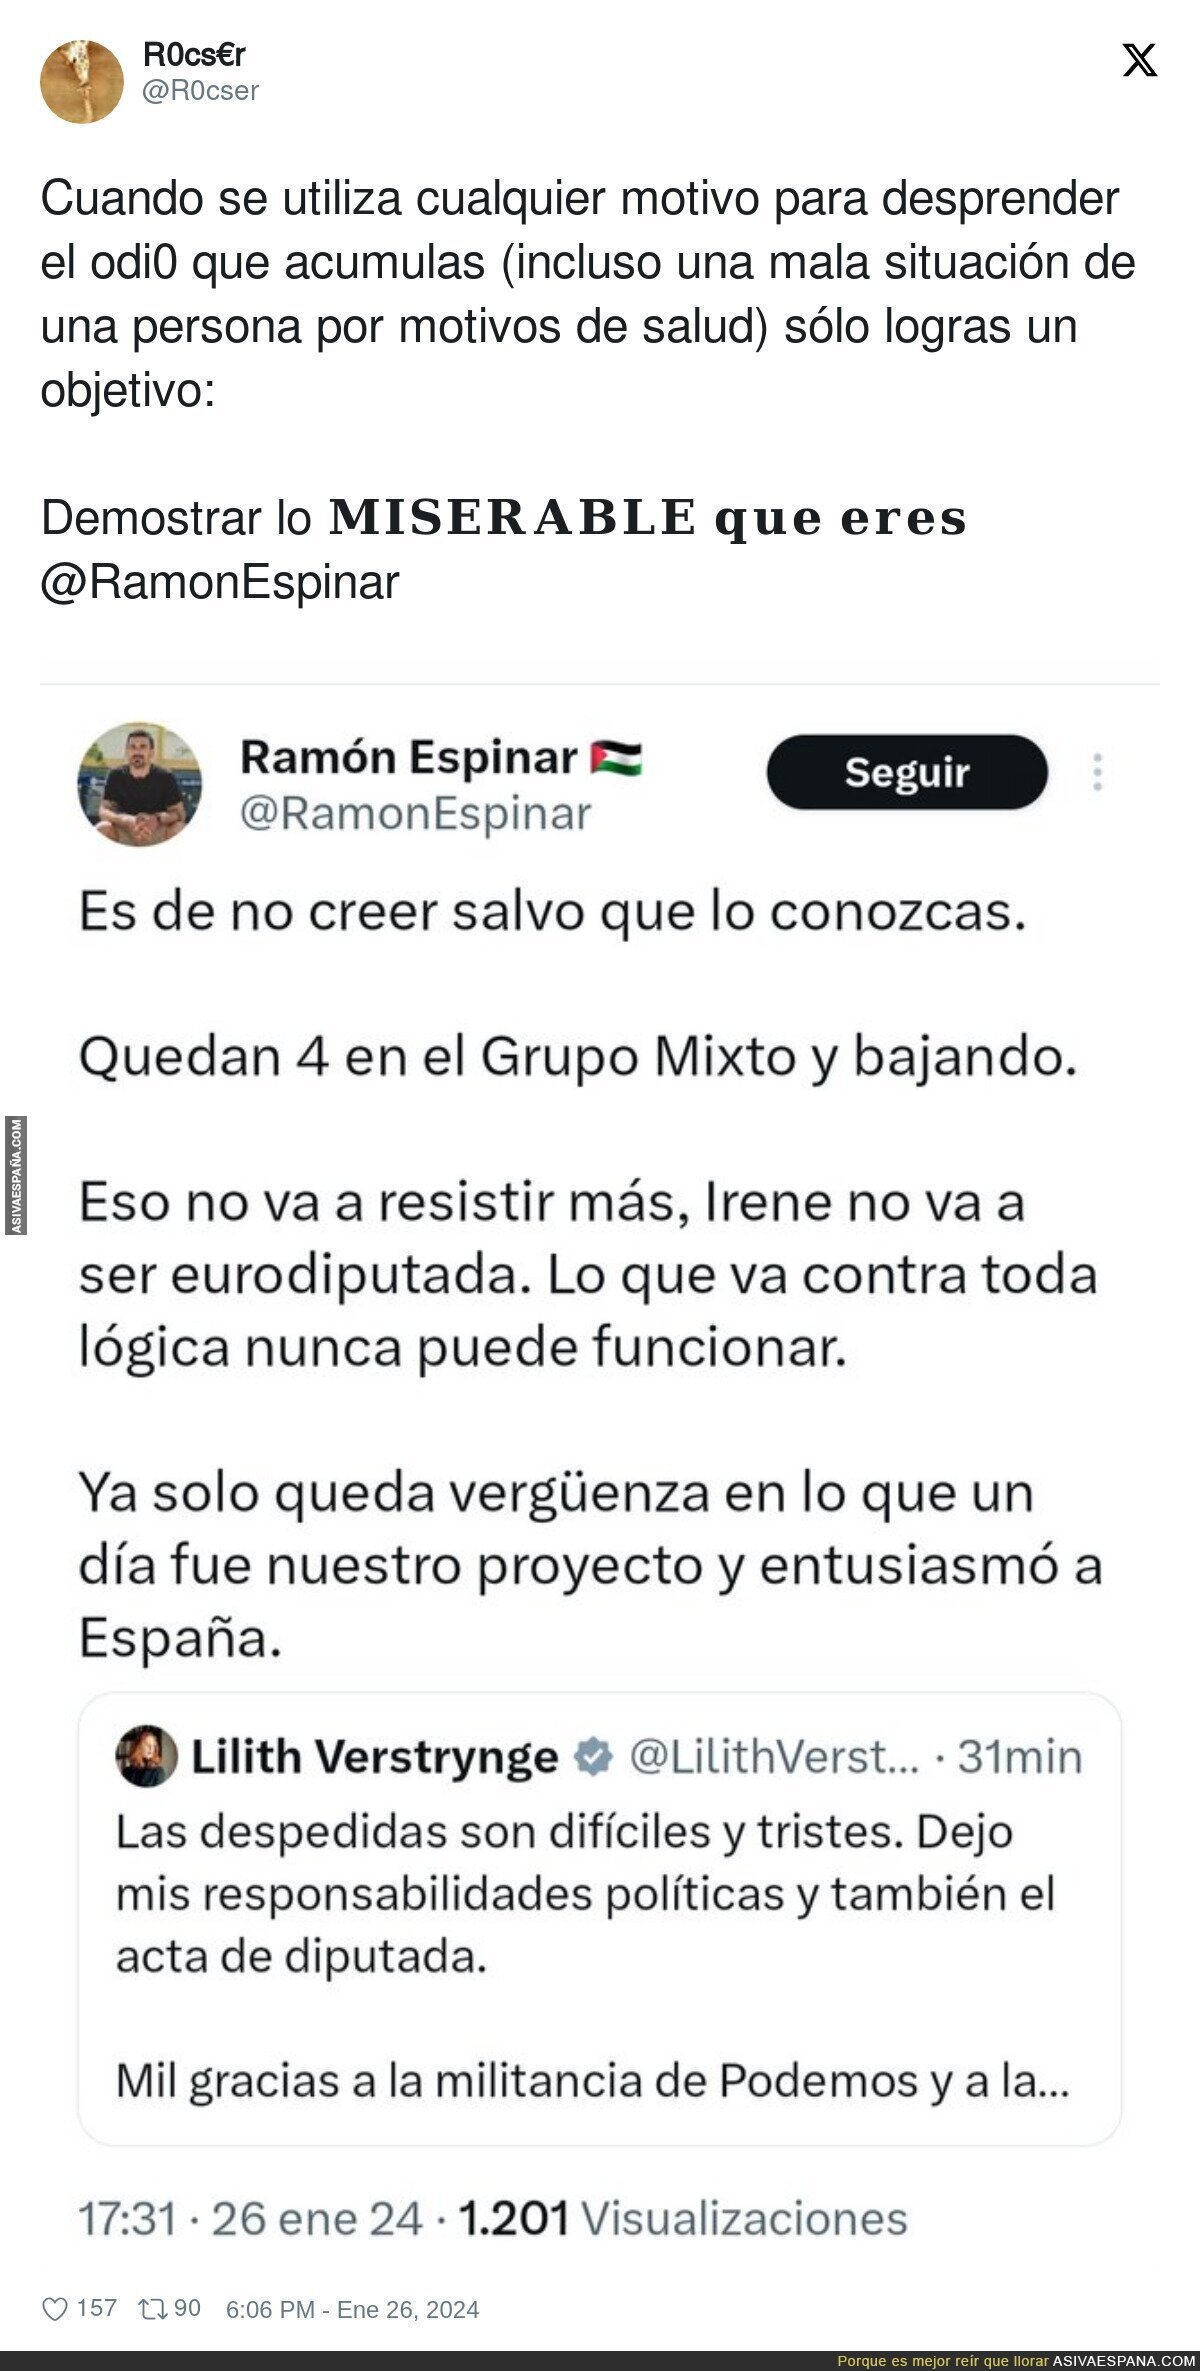 Ramón Espinar aprovecha cualquier oportunidad para desprender odio